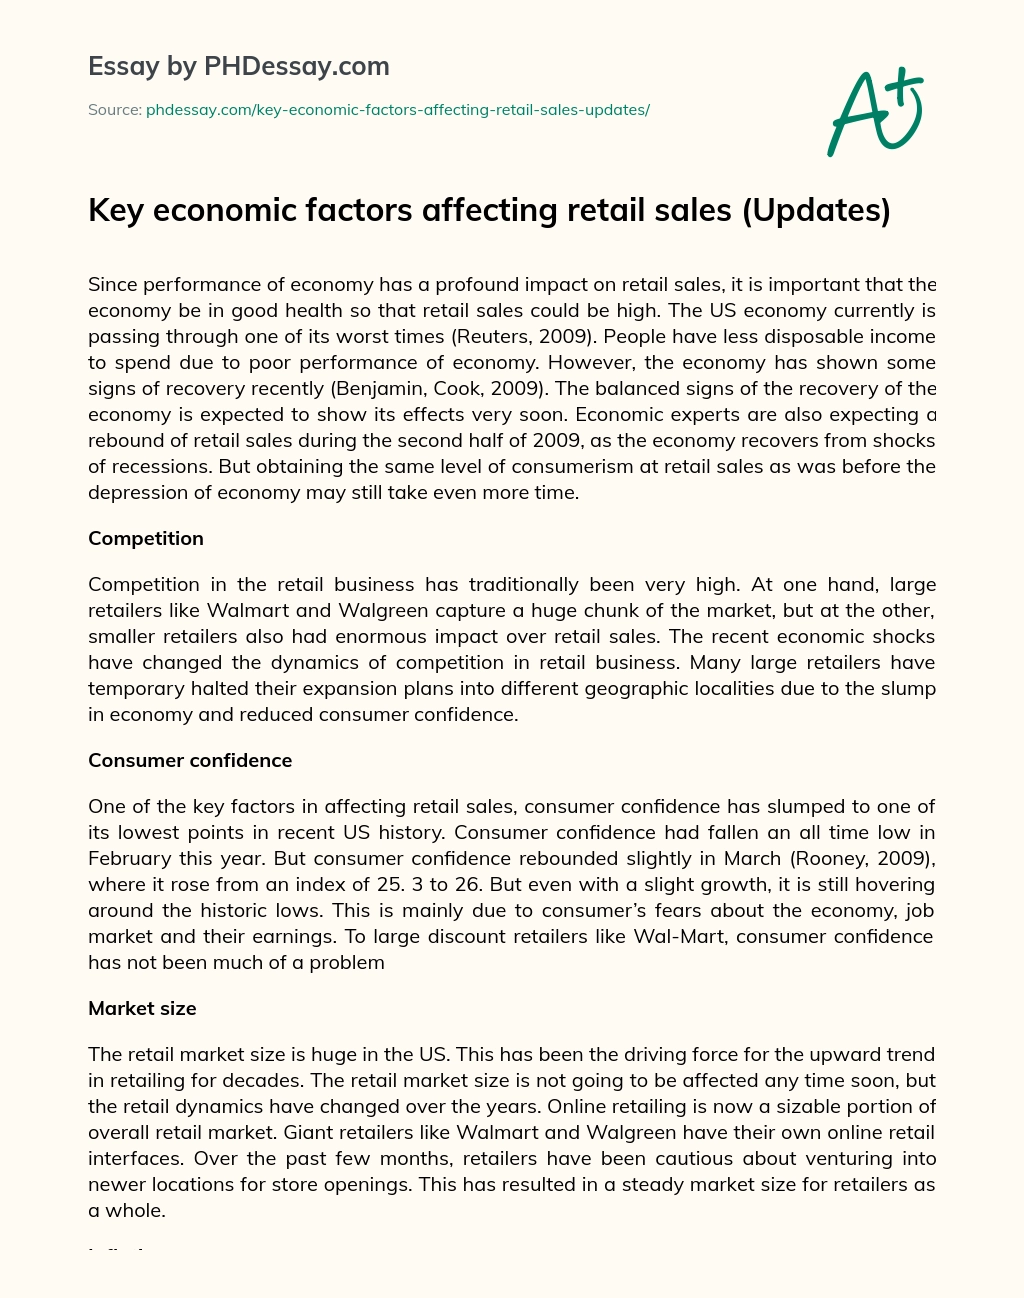 Key economic factors affecting retail sales (Updates) essay